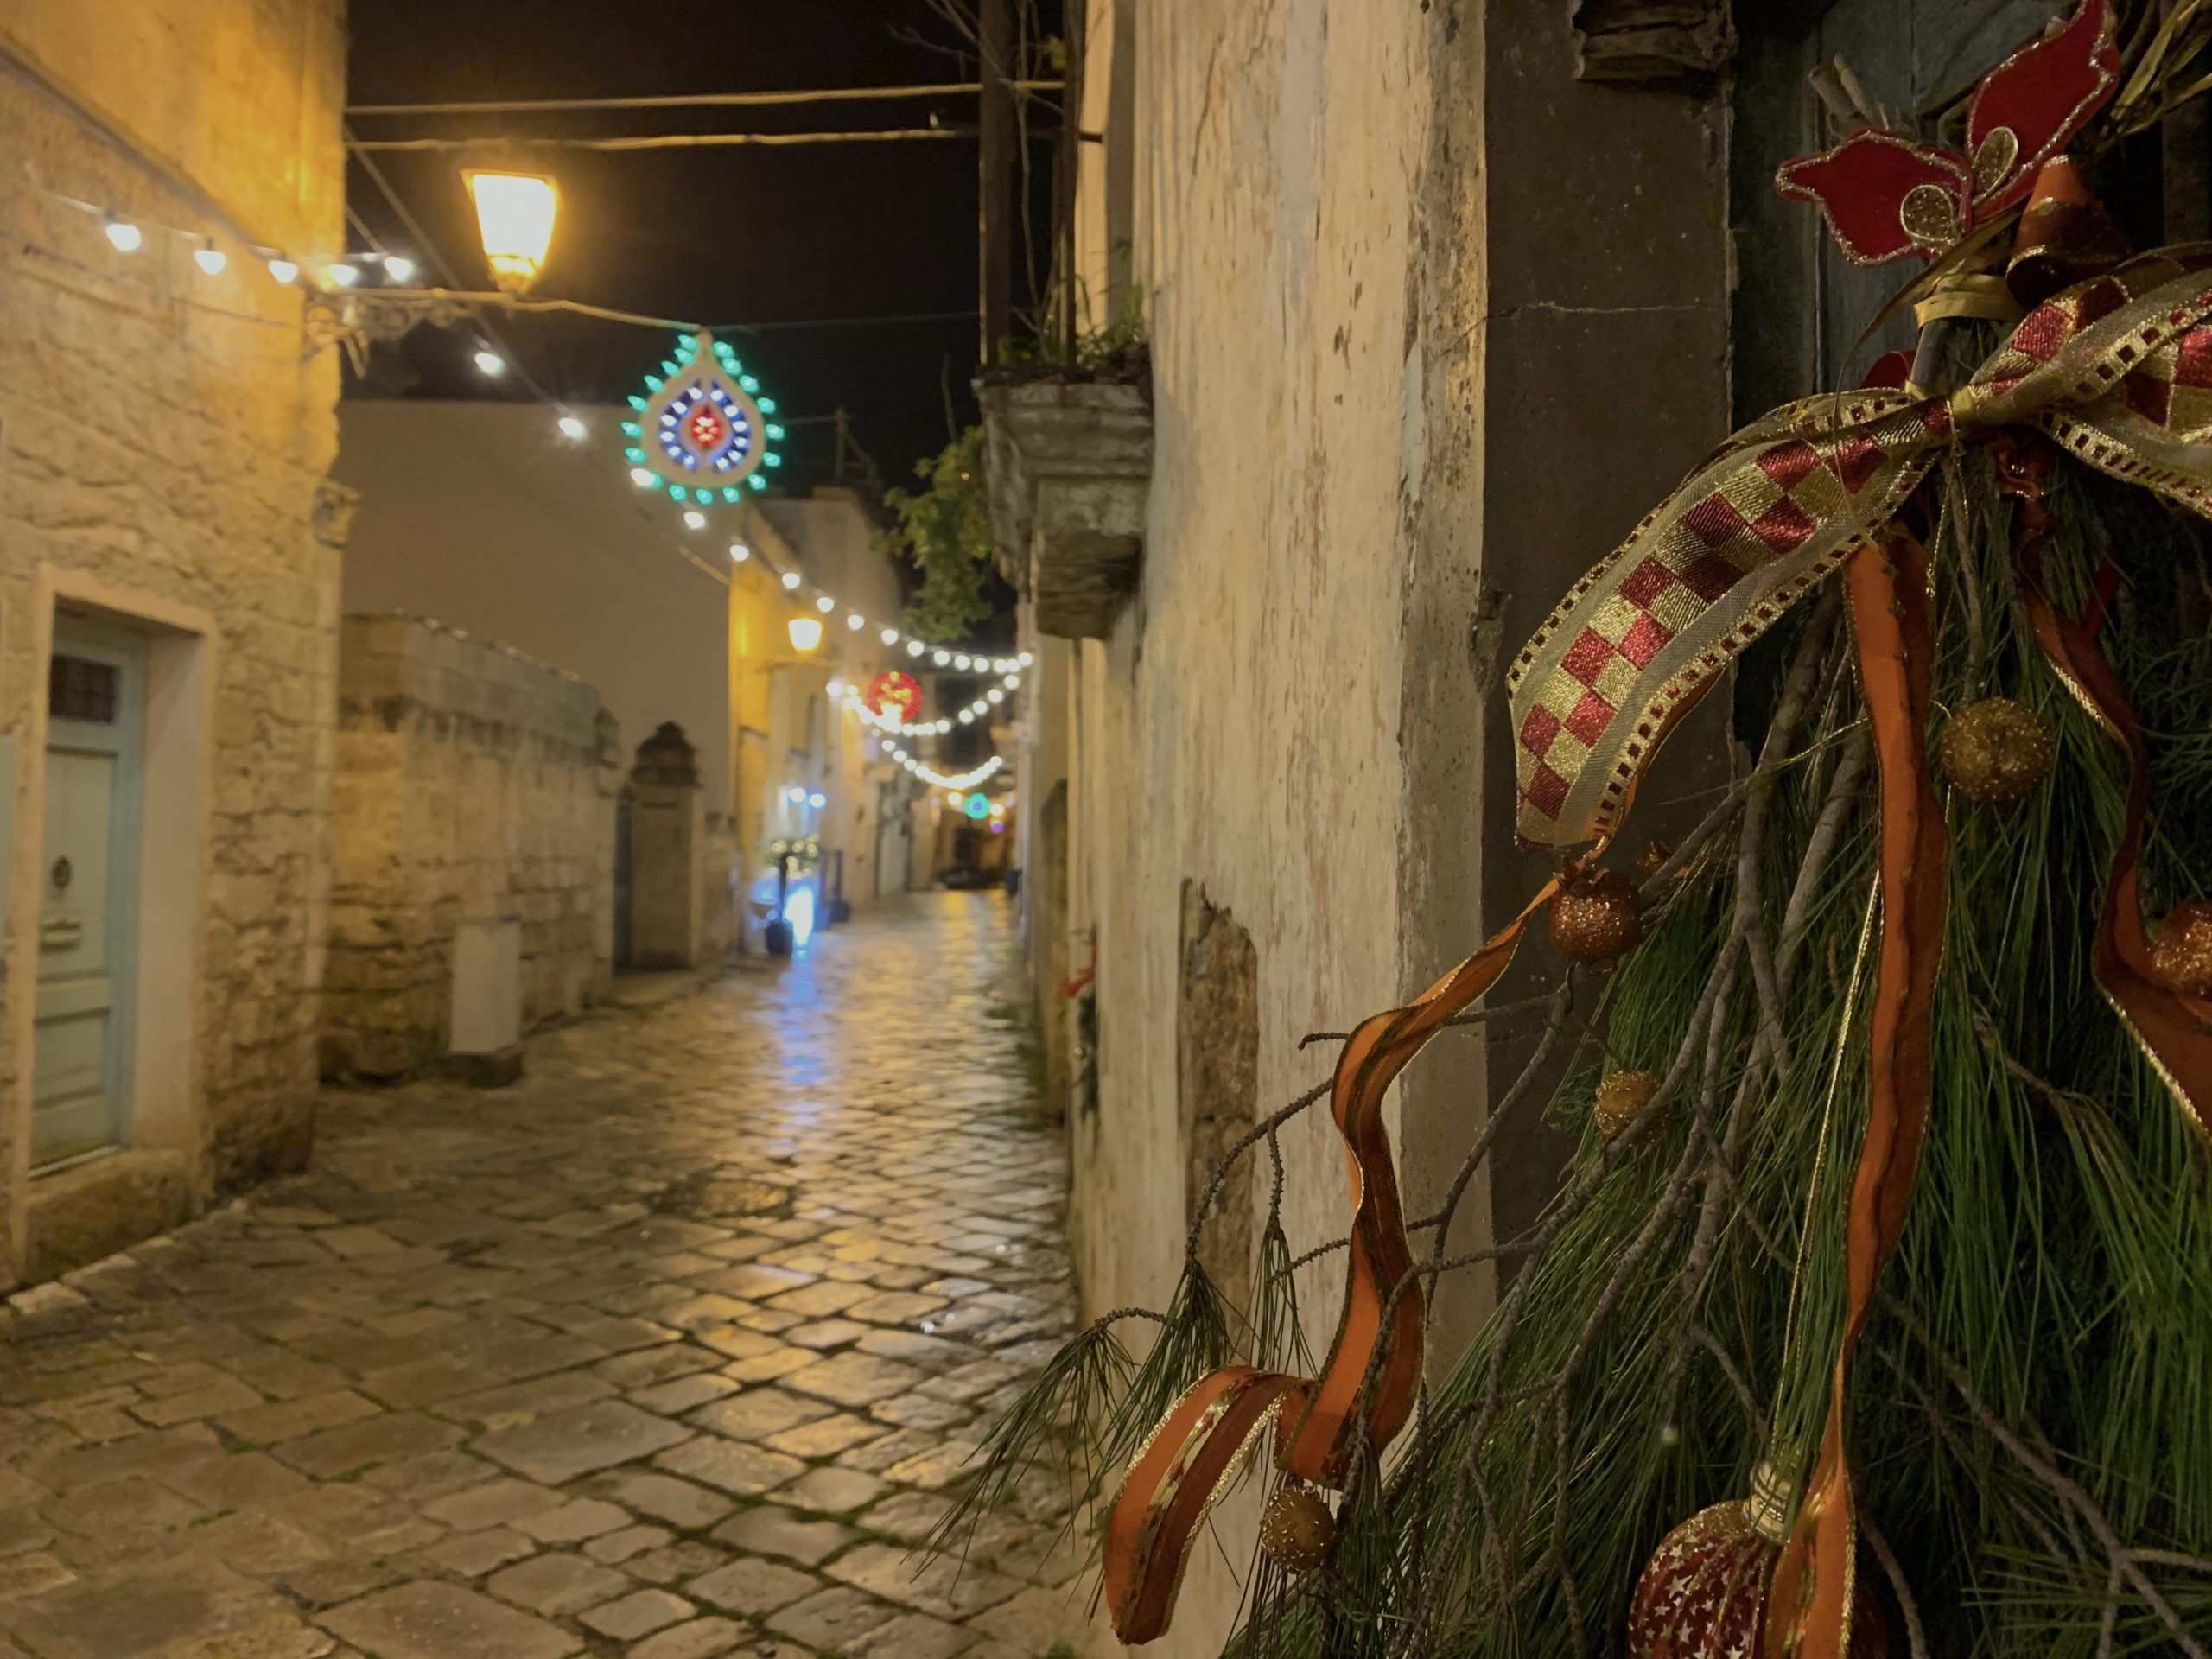 Decorazioni natalizie nel centro storico di Racale